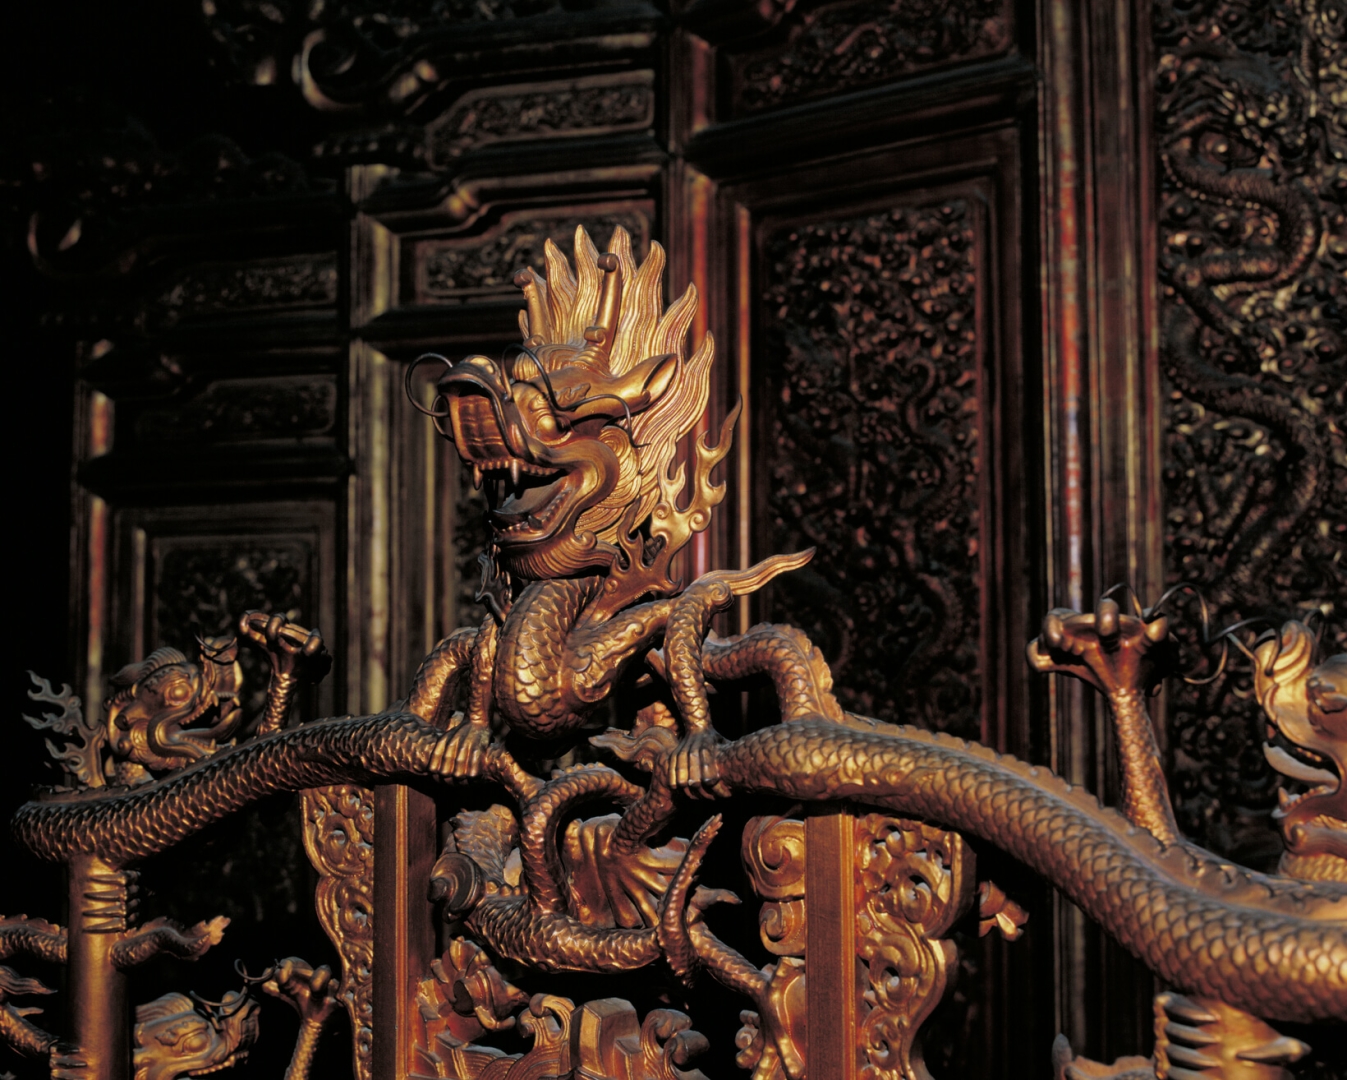 Colonnes dorées avec <br />
des motifs du dragon <br />
enroulé et trône avec <br />
crête de dragon dans <br />
le Pavillon de la suprême <br />
harmonie